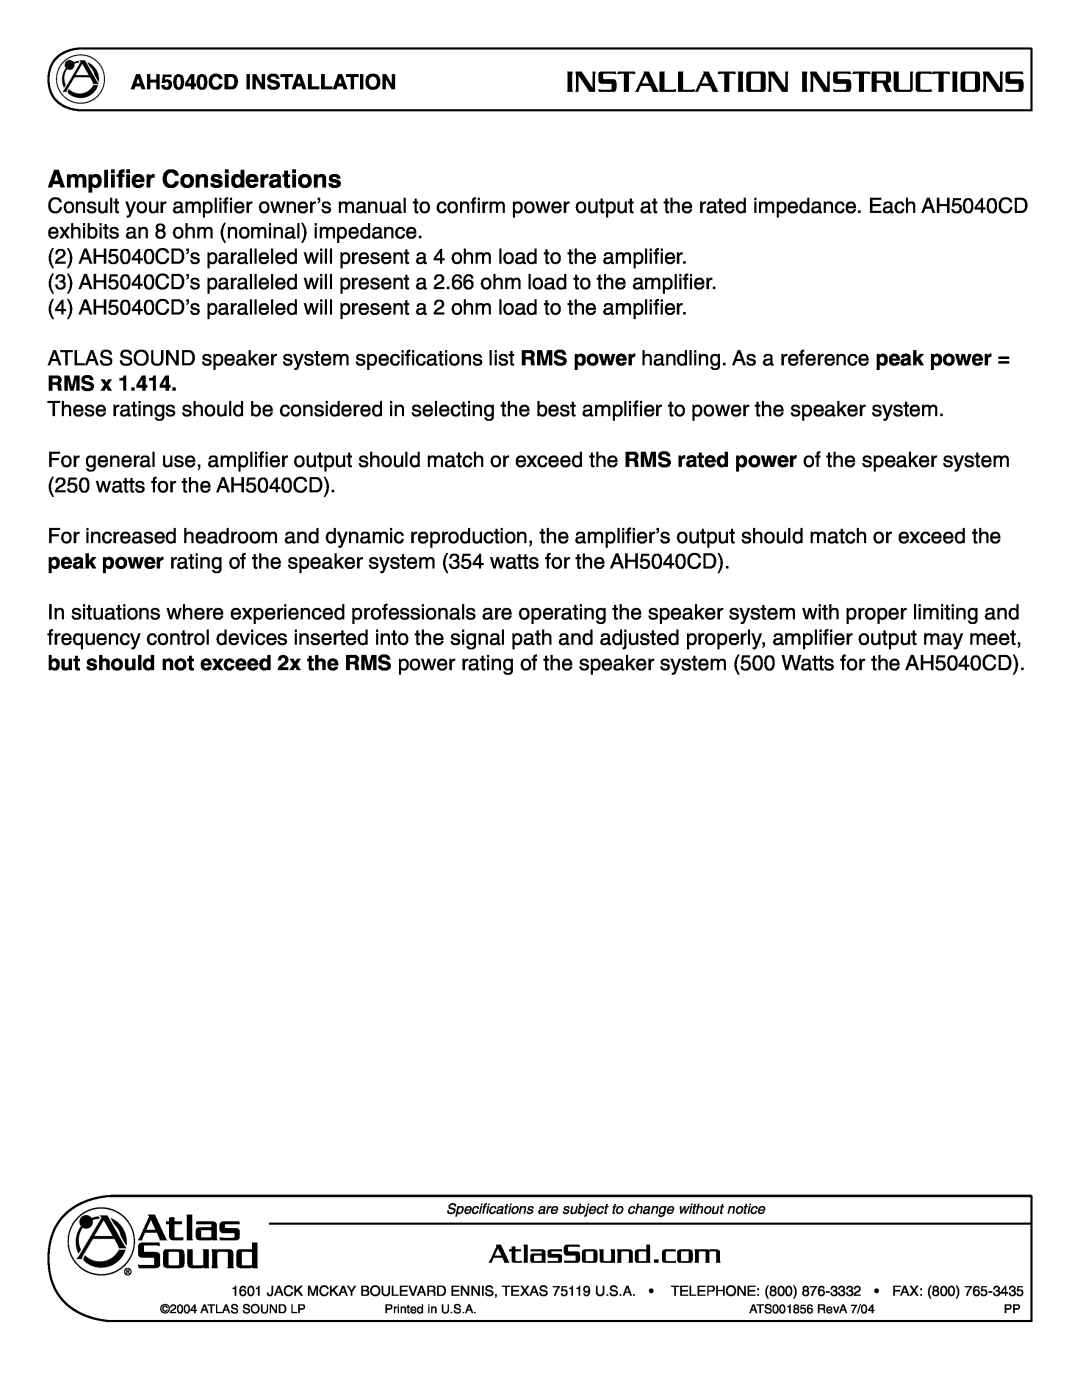 Atlas Sound specifications Ampliﬁer Considerations, Installation Instructions, AH5040CD INSTALLATION, Rms 